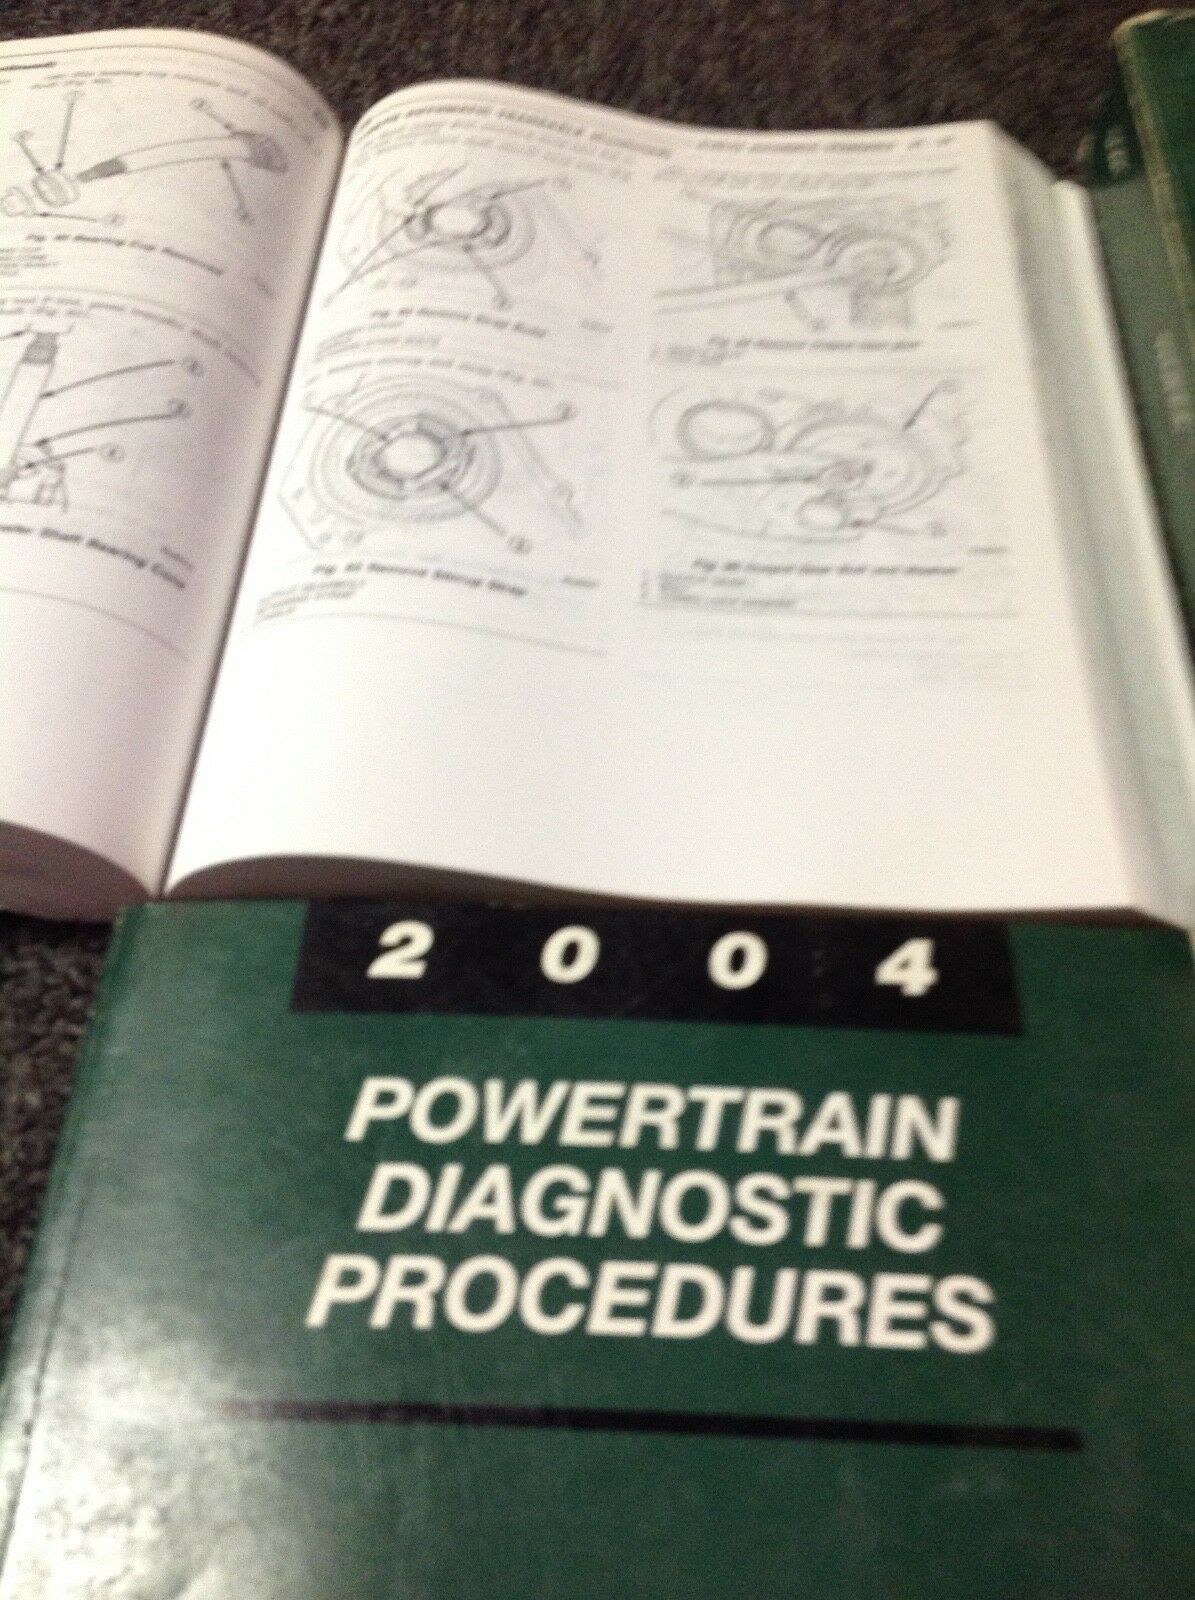 2006 Chrysler Pacifica Service Repair Shop Workshop Manual Set W DIagnostics BK